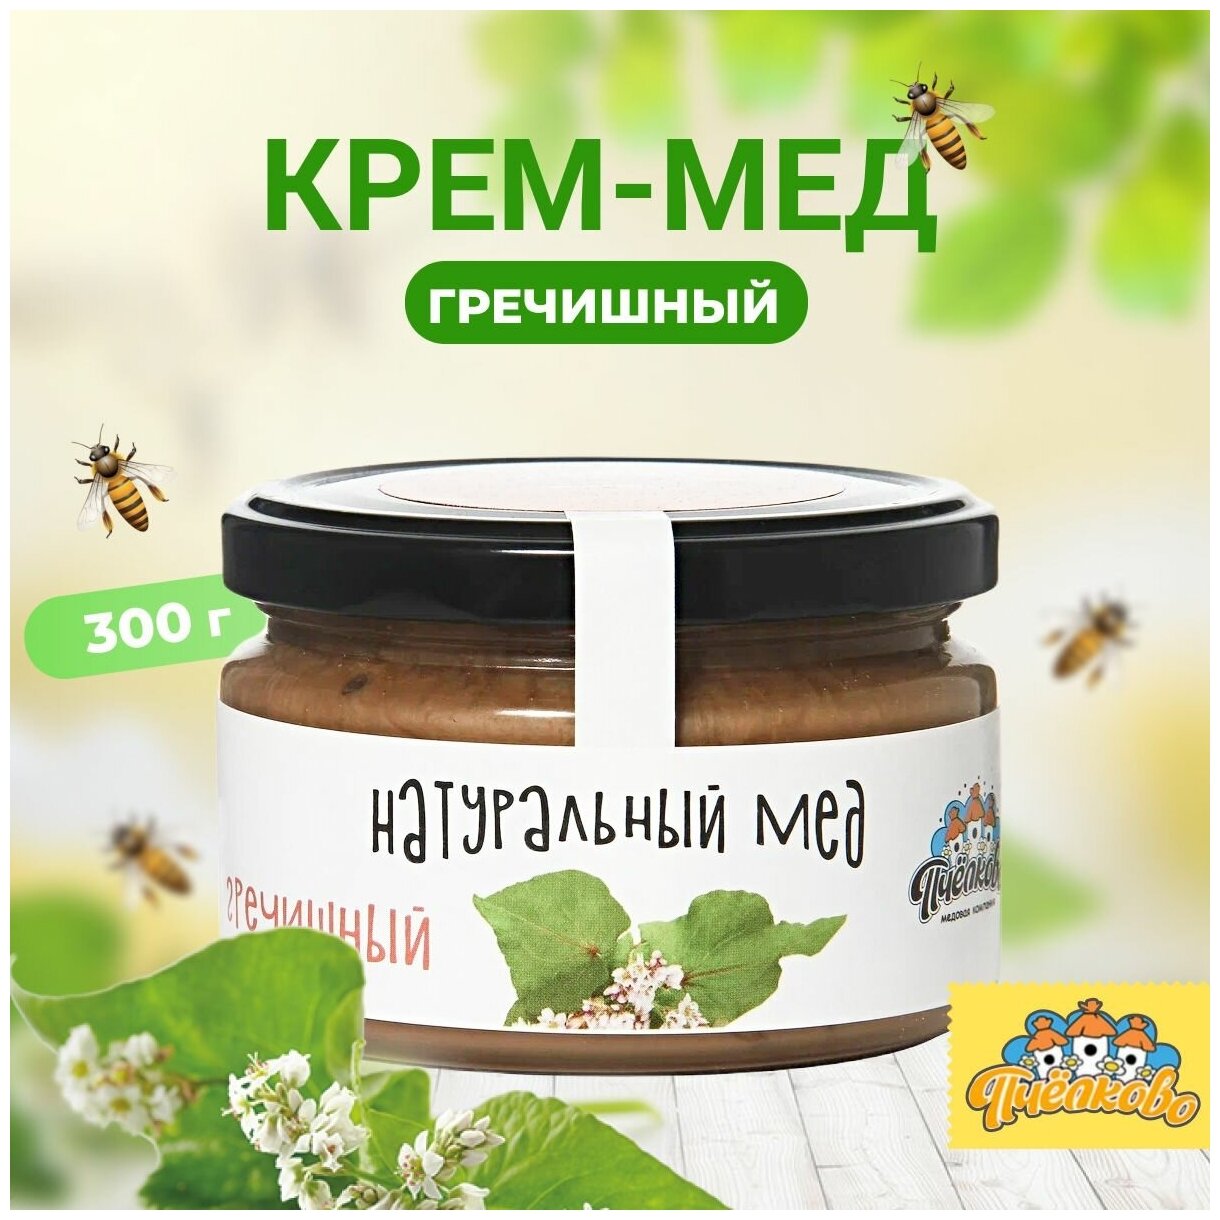 Натуральный гречишный мед "Пчёлково" 300г